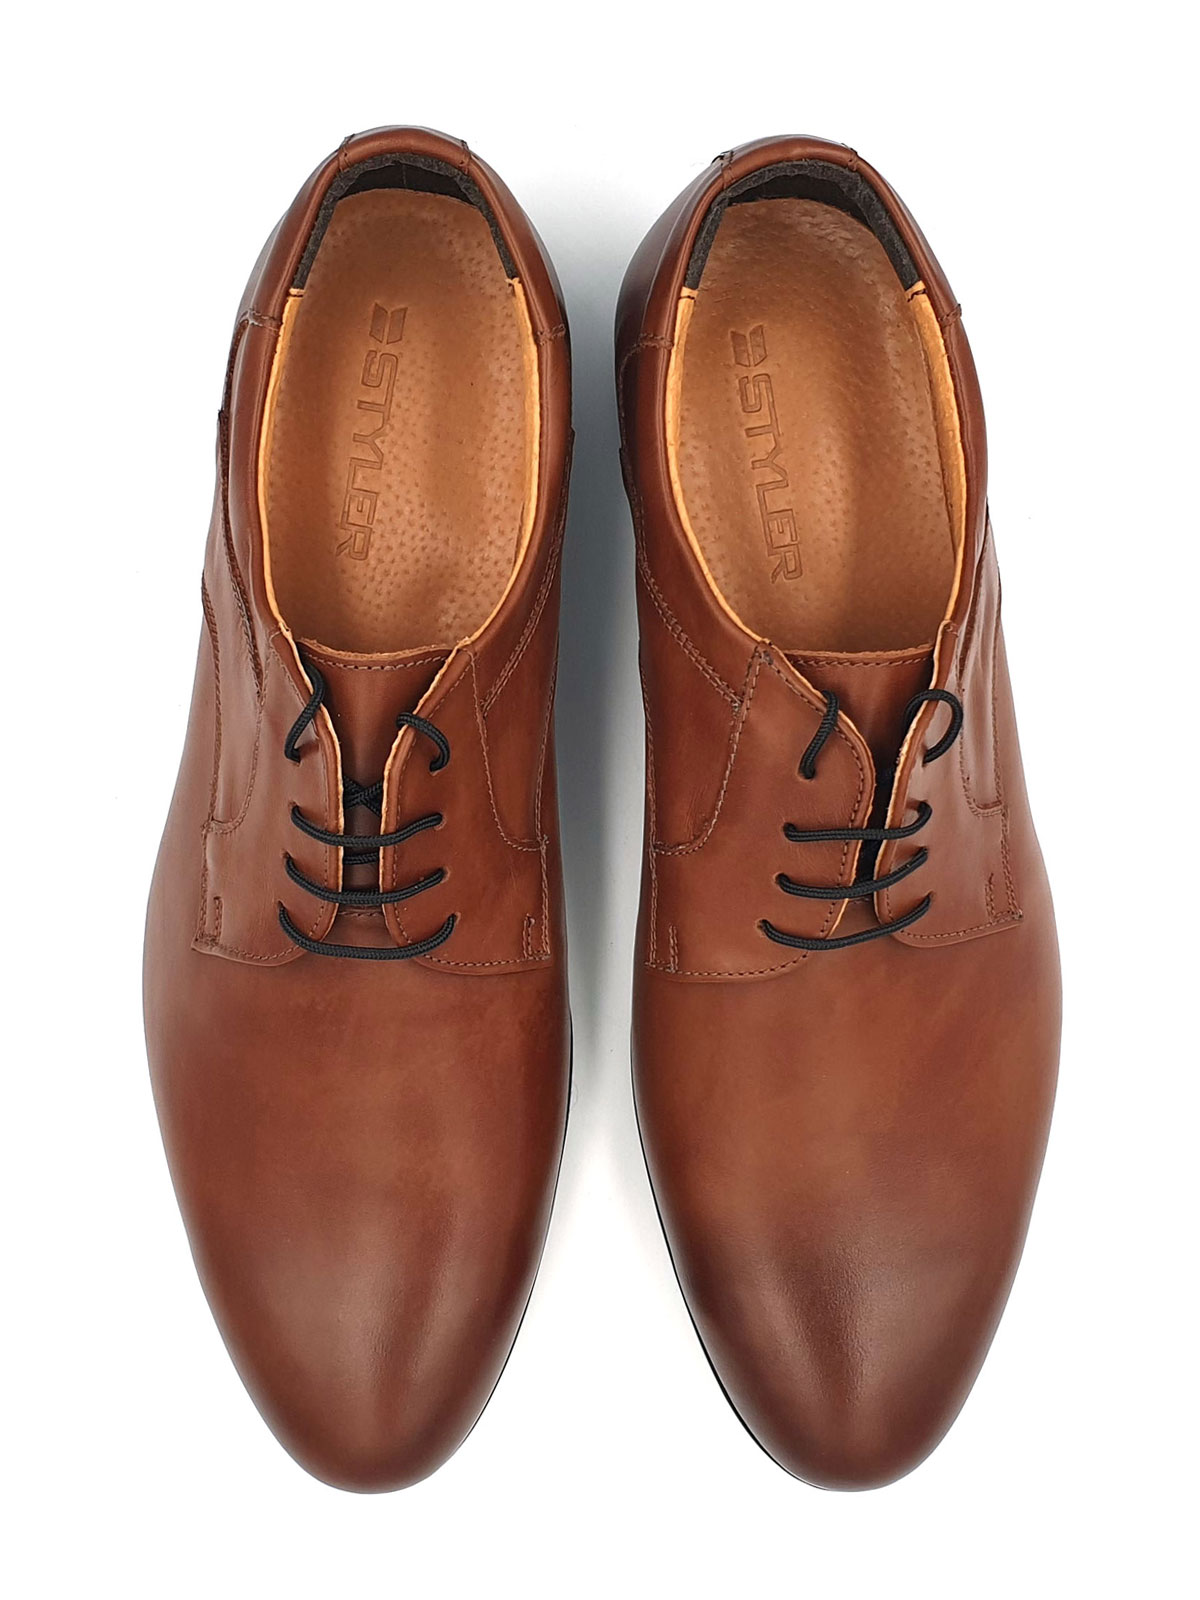  elegant leather shoes  - 81072 - € 72.00 img1